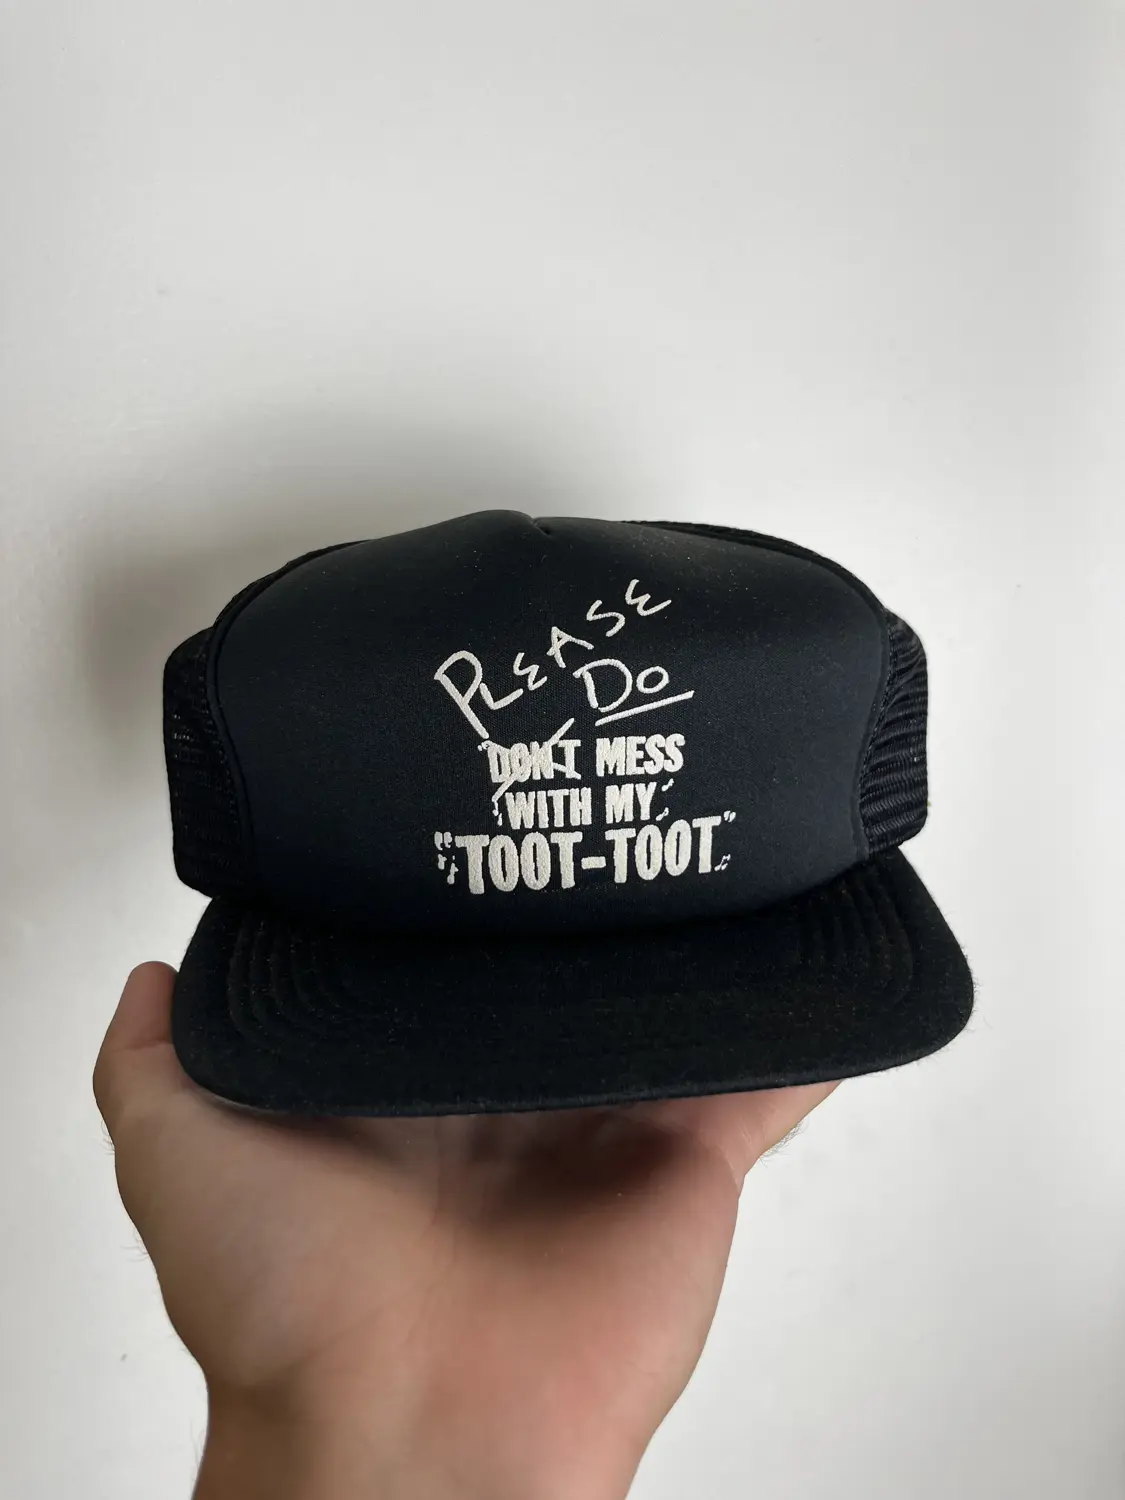 Vintage funny hat